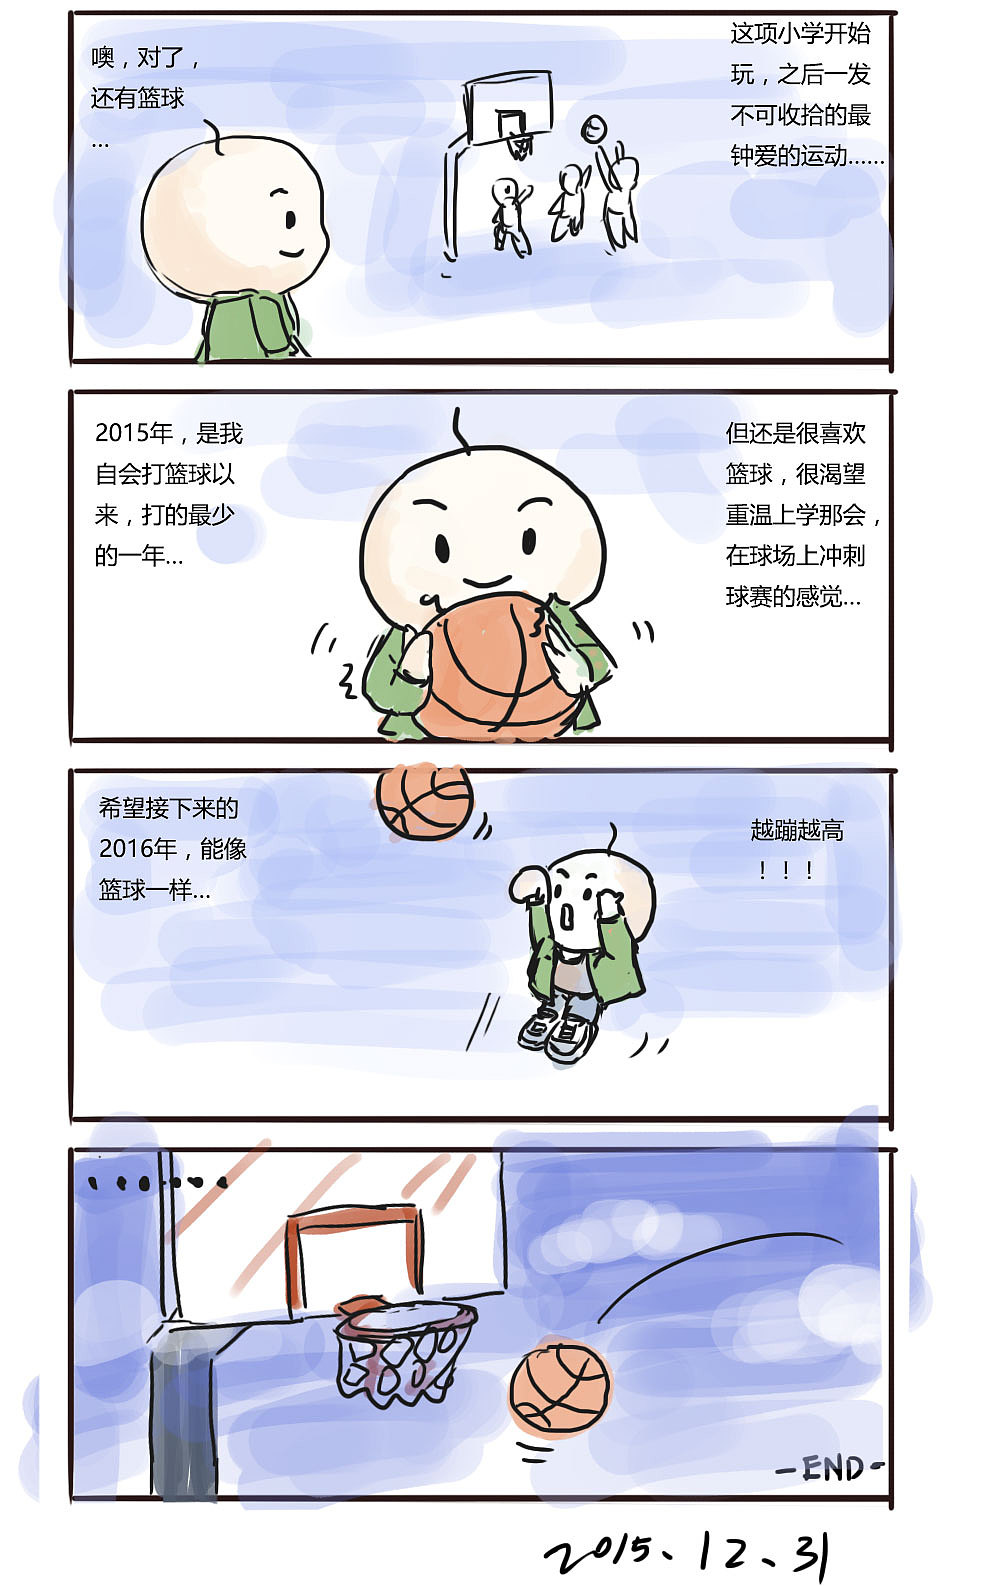 英语四格漫画春节故事图片